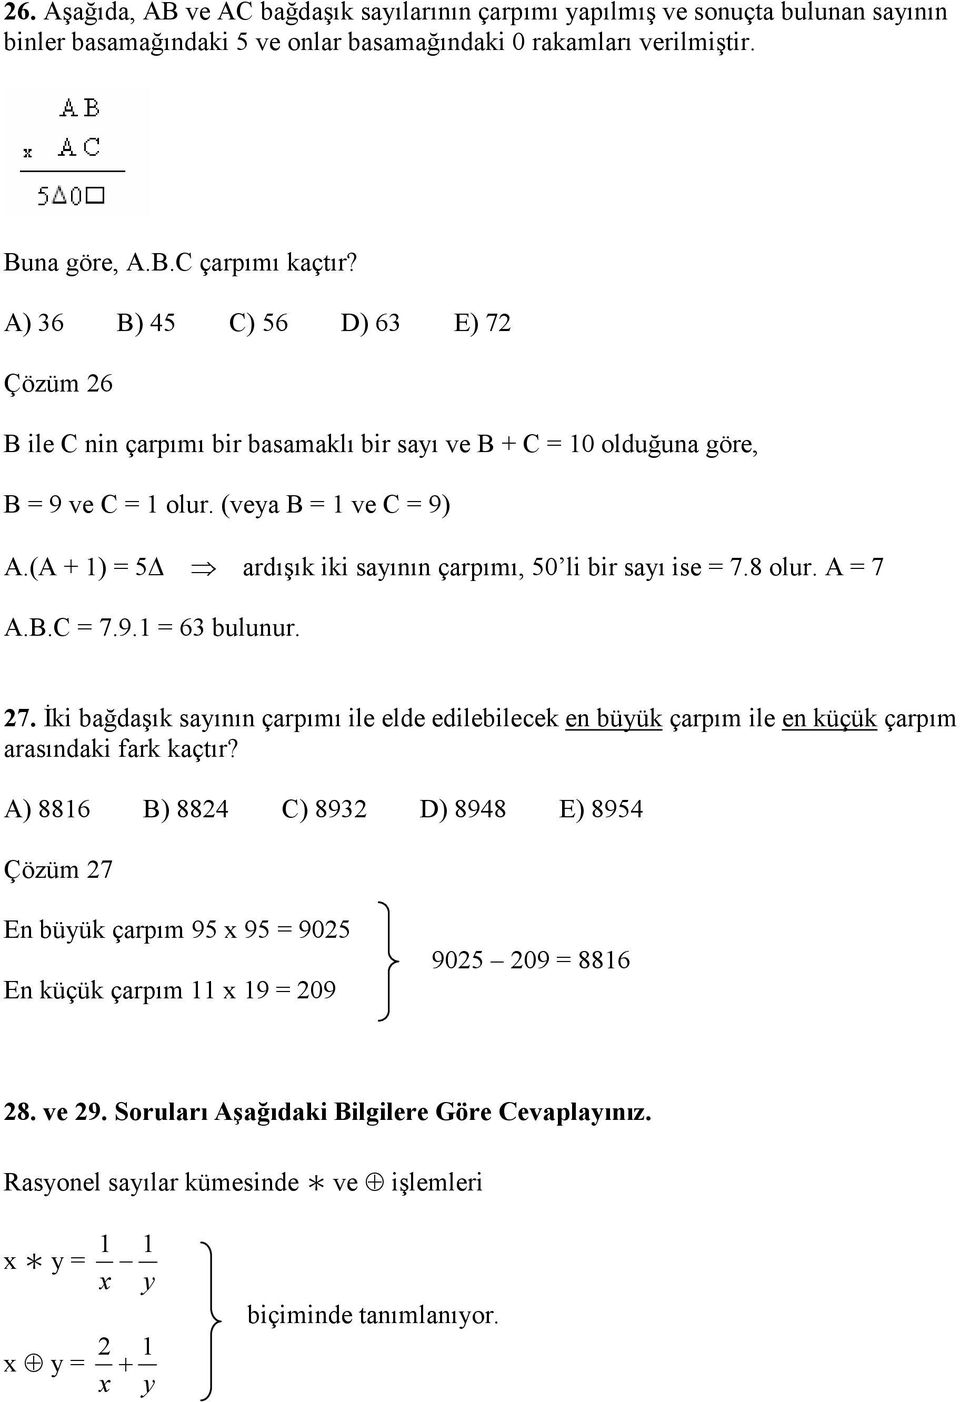 (A + 1) 5 ardışık iki sayının çarpımı, 50 li bir sayı ise 7.8 olur. A 7 A.B.C 7.9.1 6 bulunur. 7. Đki bağdaşık sayının çarpımı ile elde edilebilecek en büyük çarpım ile en küçük çarpım arasındaki fark kaçtır?